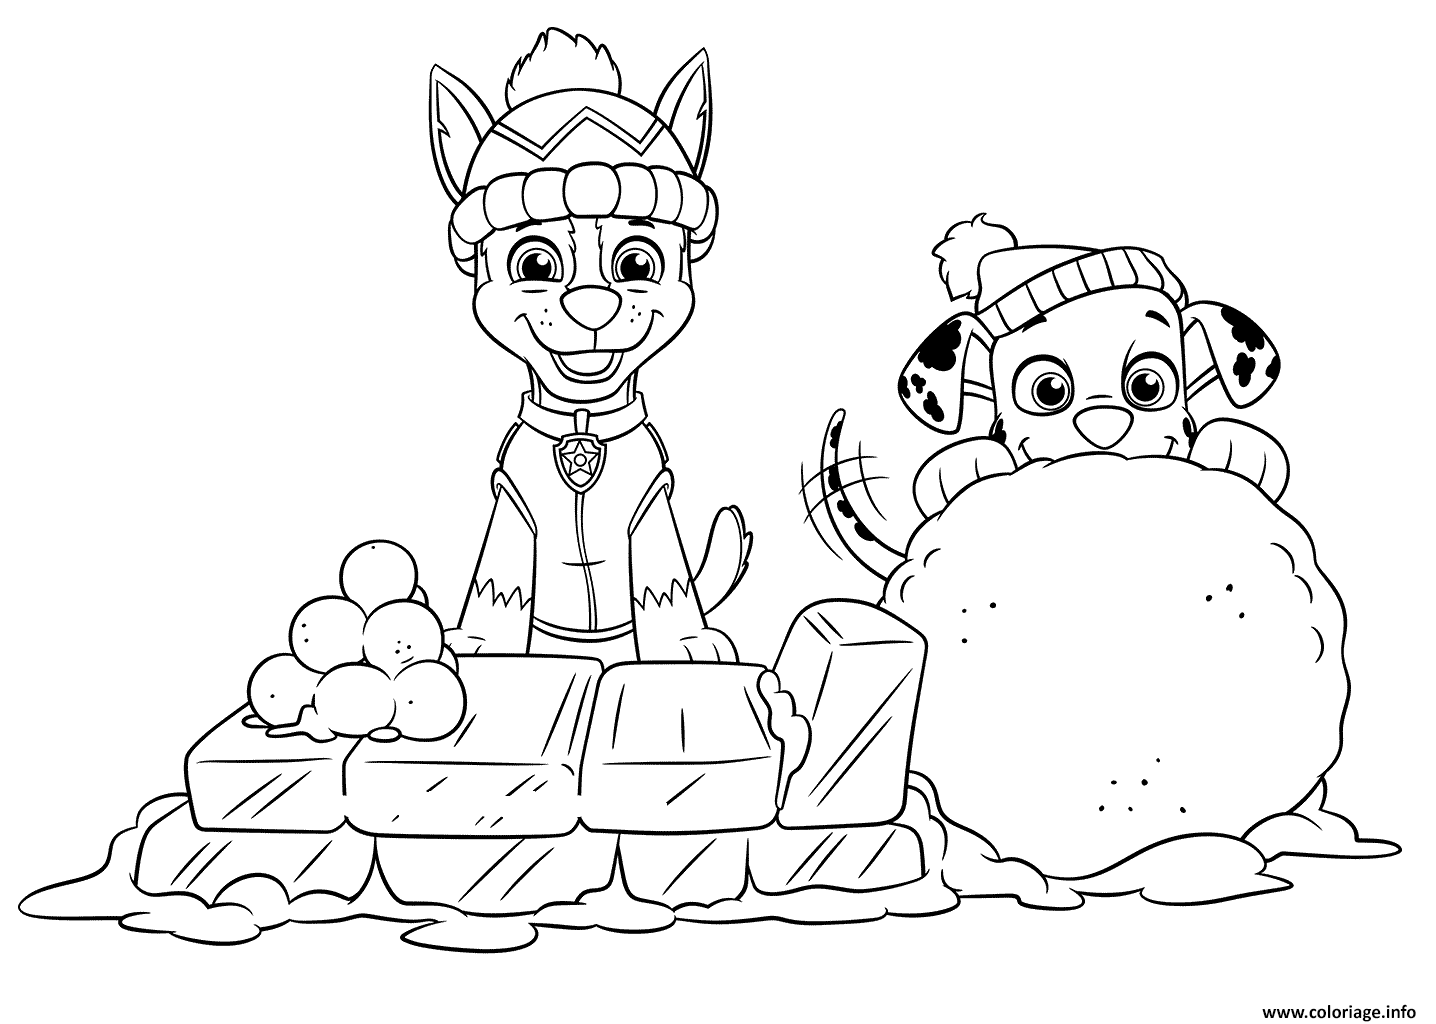 Dessin marcus et chase prepare des boules de neige Coloriage Gratuit à Imprimer